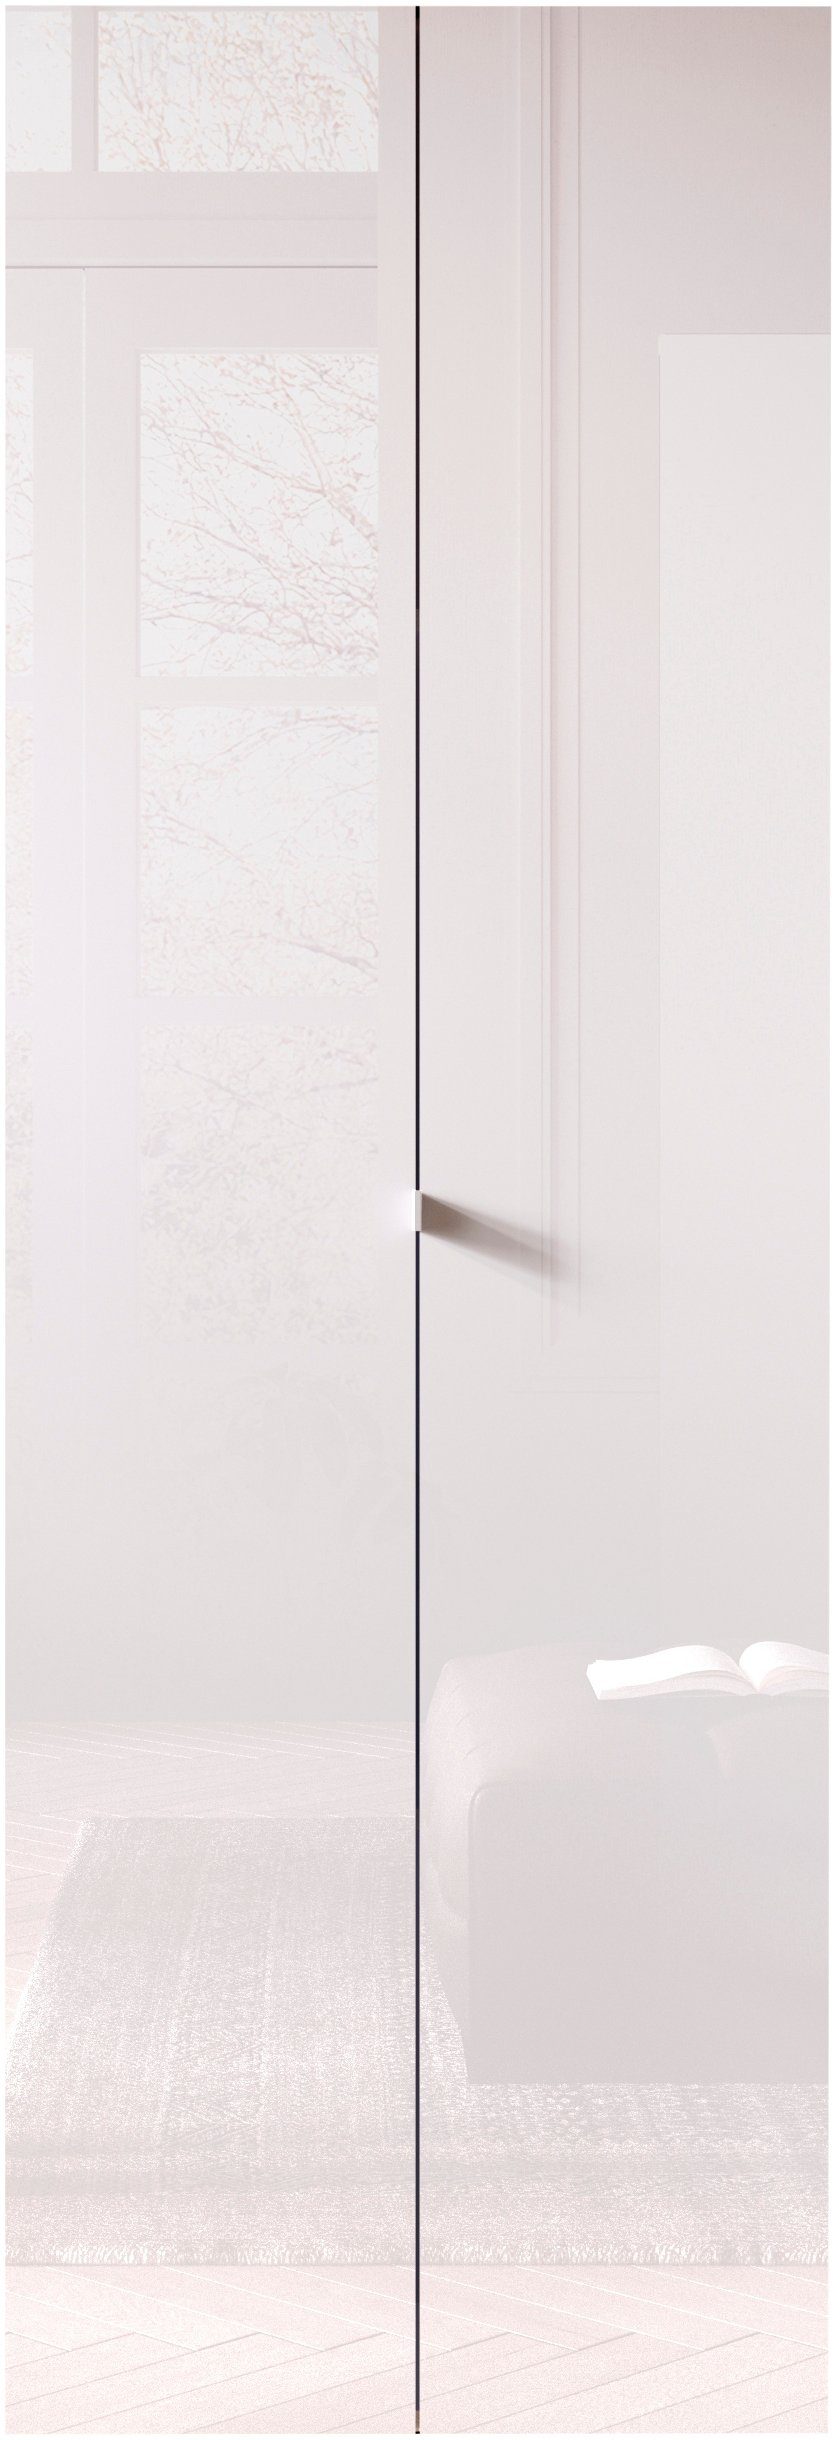 LC Aktenschrank Basic, Büroschrank mit 2 Türen (innen 3 Einlegeböden), hoher Mehrzweckschrank in verschiedenen Farben, B 63 x H 184 cm